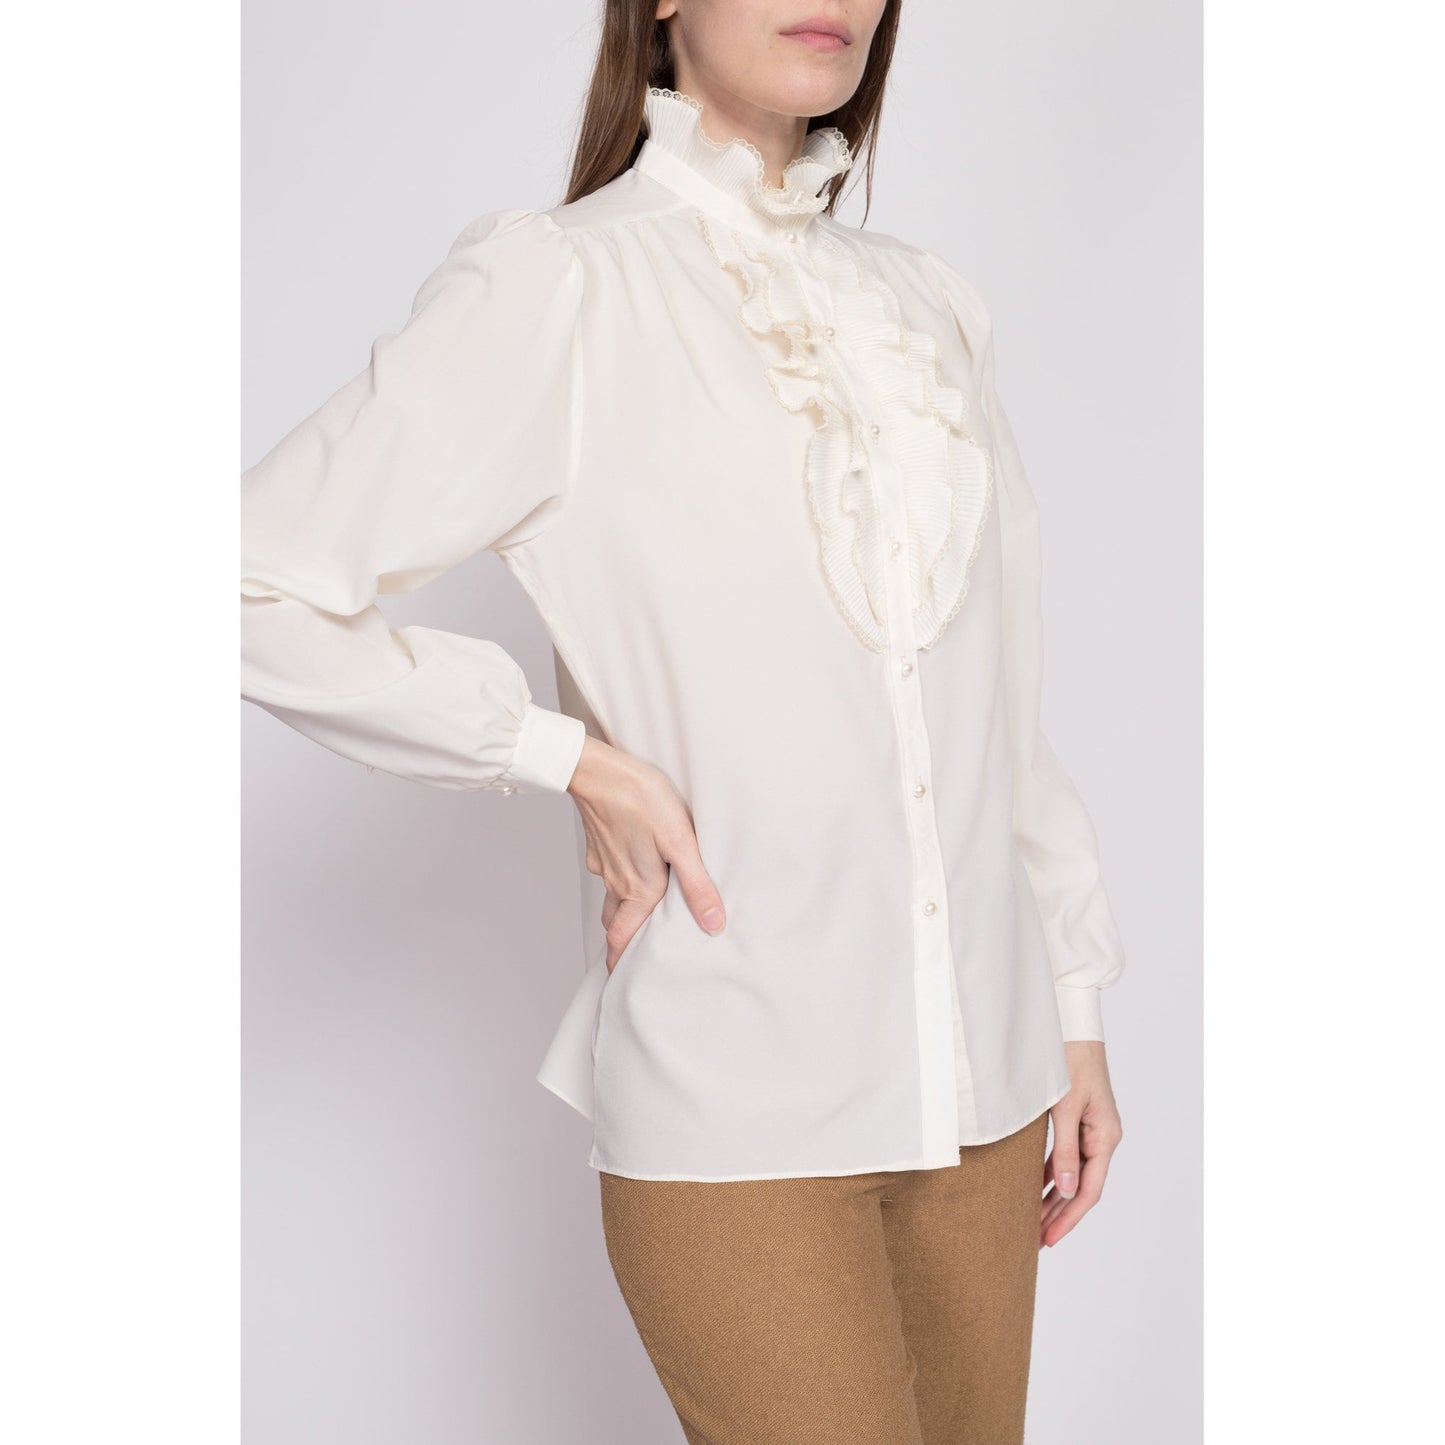 70s Sheer Tuxedo Ruffle Blouse - Large | Vintage Edwardian Boho White Long Sleeve Top